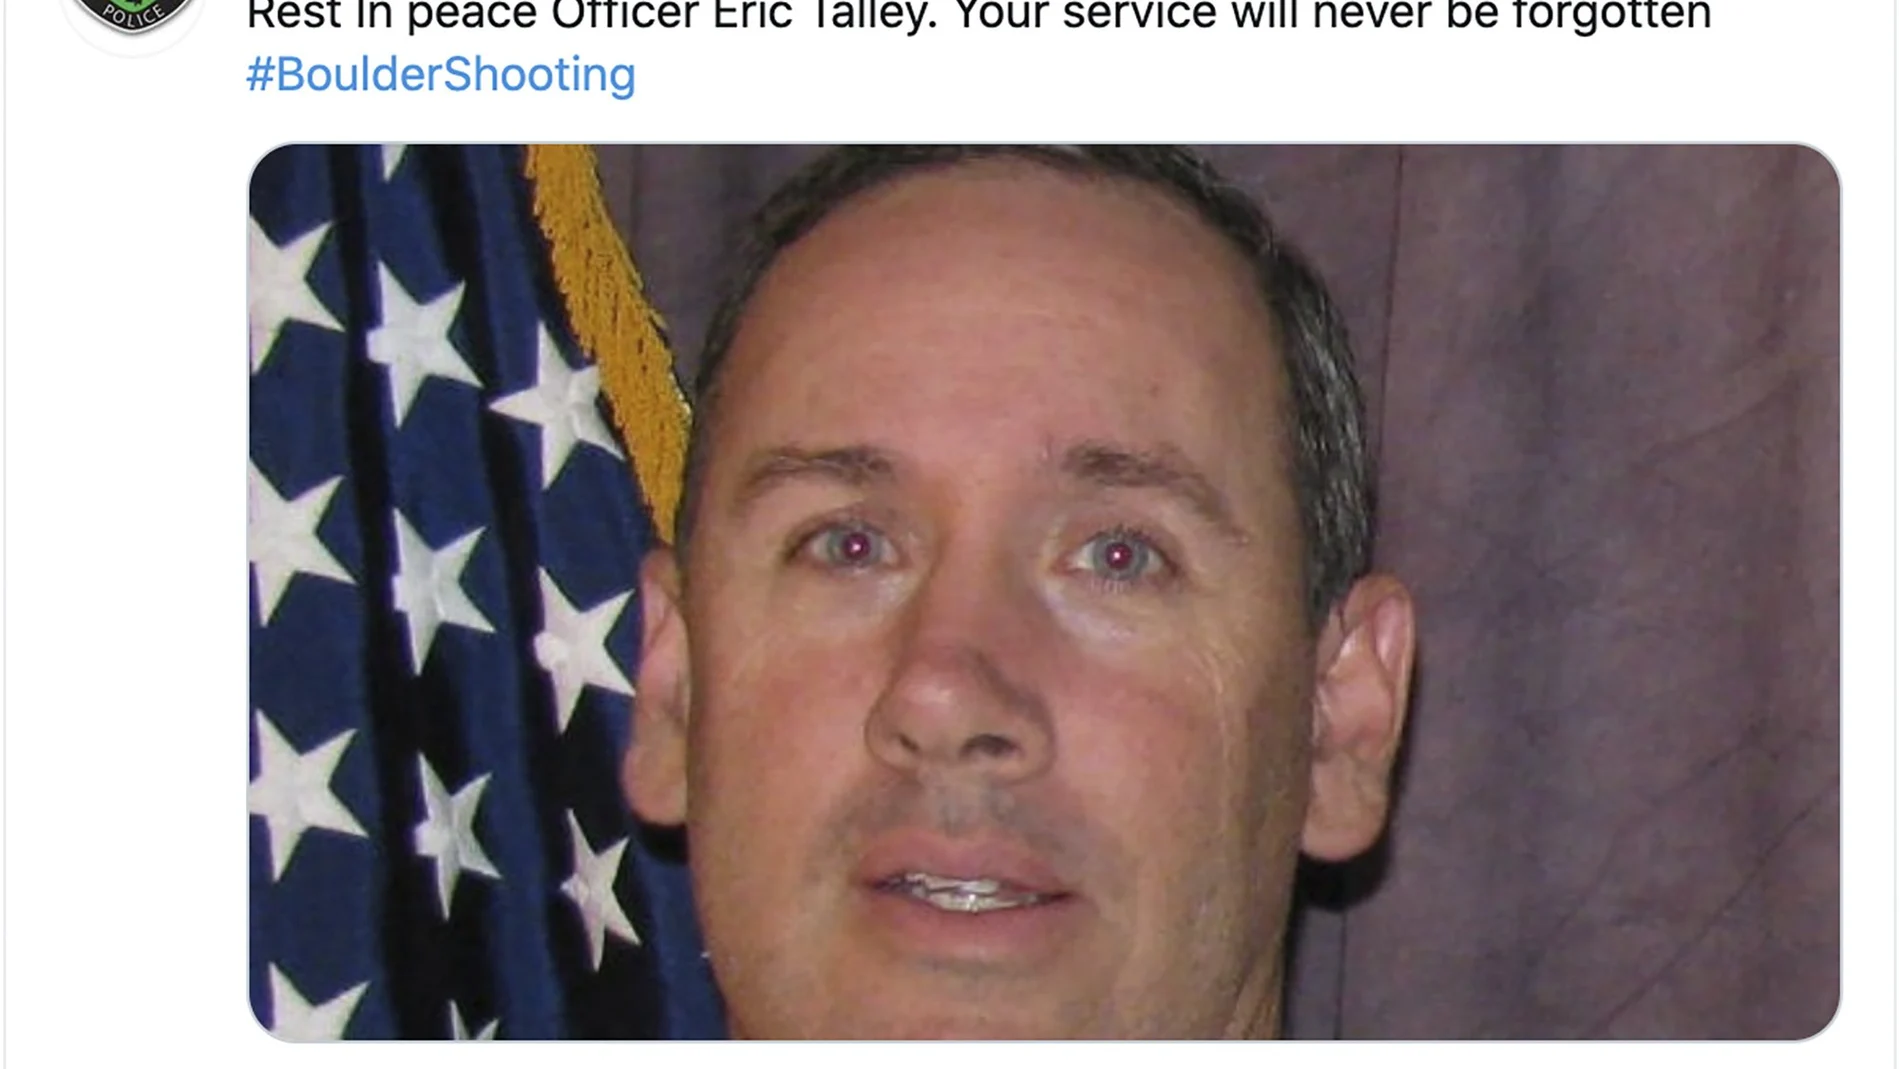 El tuit publicado por el Departamento de Policía de Boulder en recuerdo al oficial Eric Talley